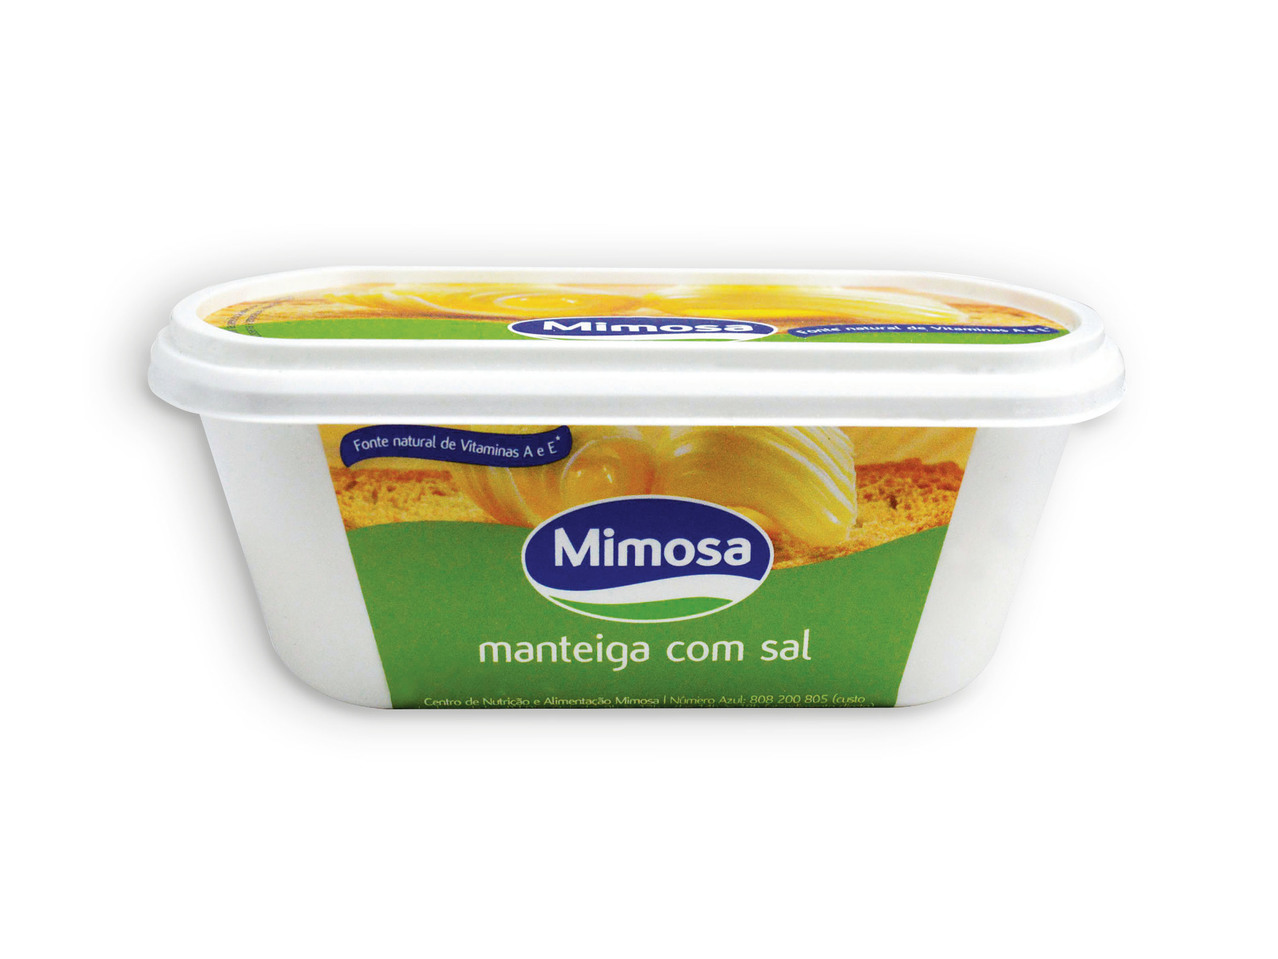 MIMOSA(R) Manteiga com Sal